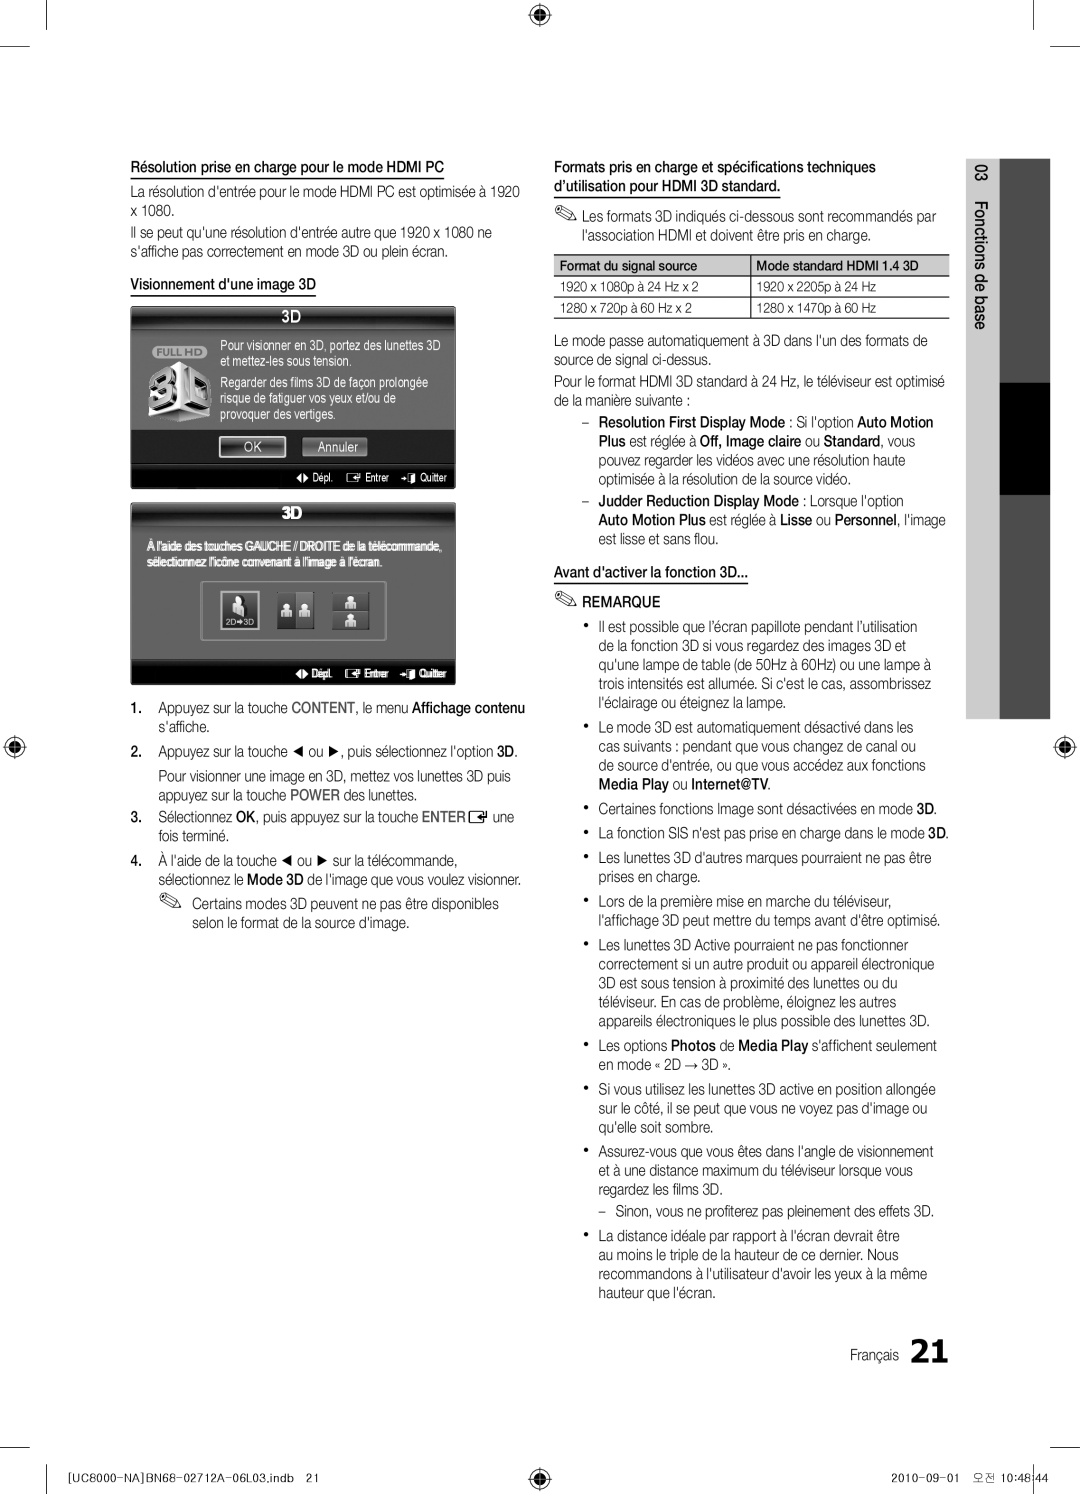 Samsung BN68-02712A-06 user manual Visionnement dune image 3D, Selon le format de la source dimage 